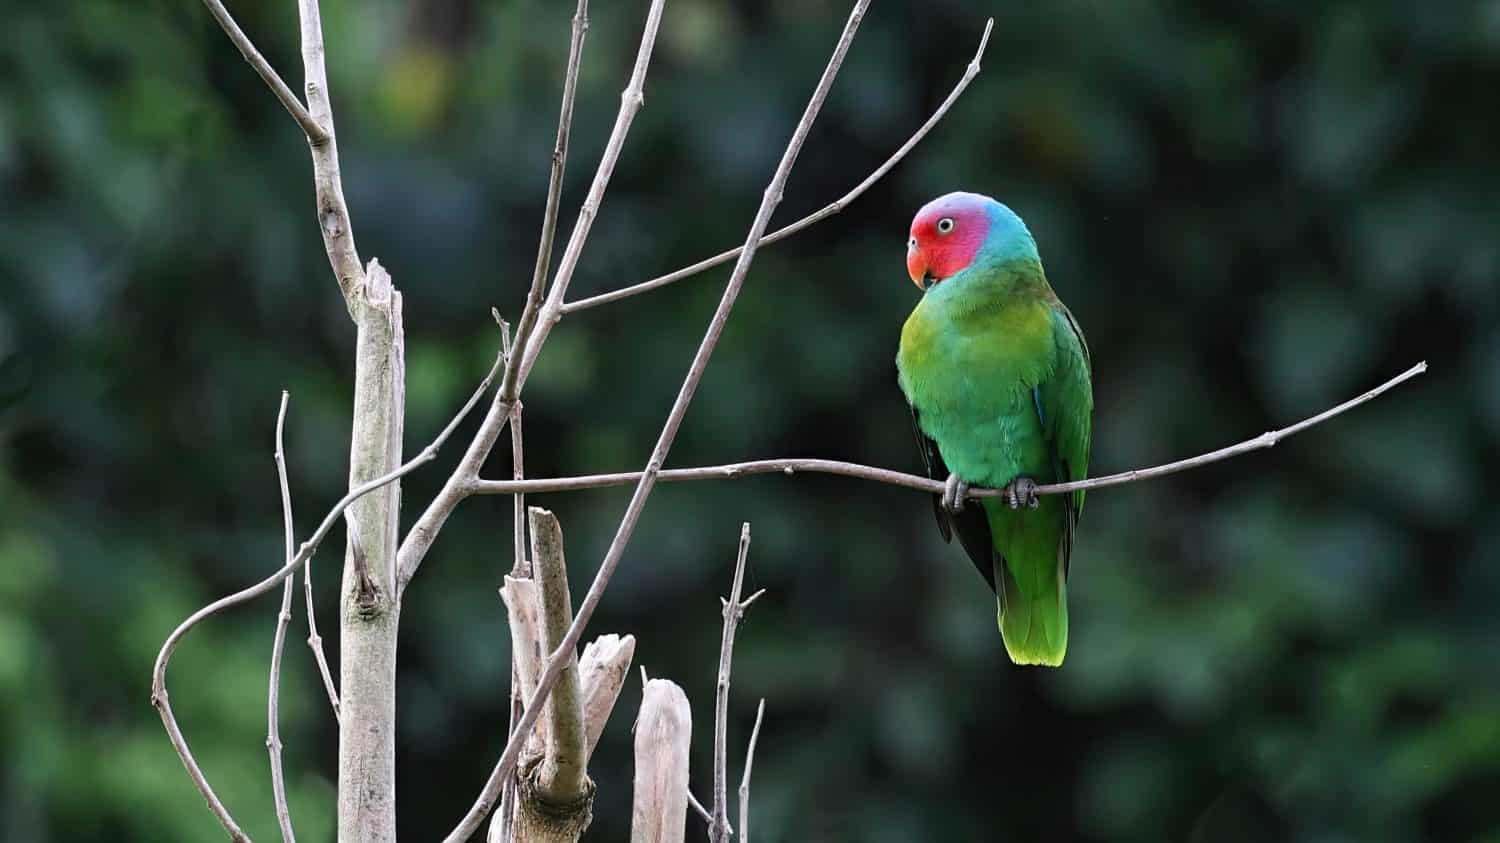 Red-cheeked parrot (Geoffroyus geoffroyi), bird of Halmahera, Indonesia